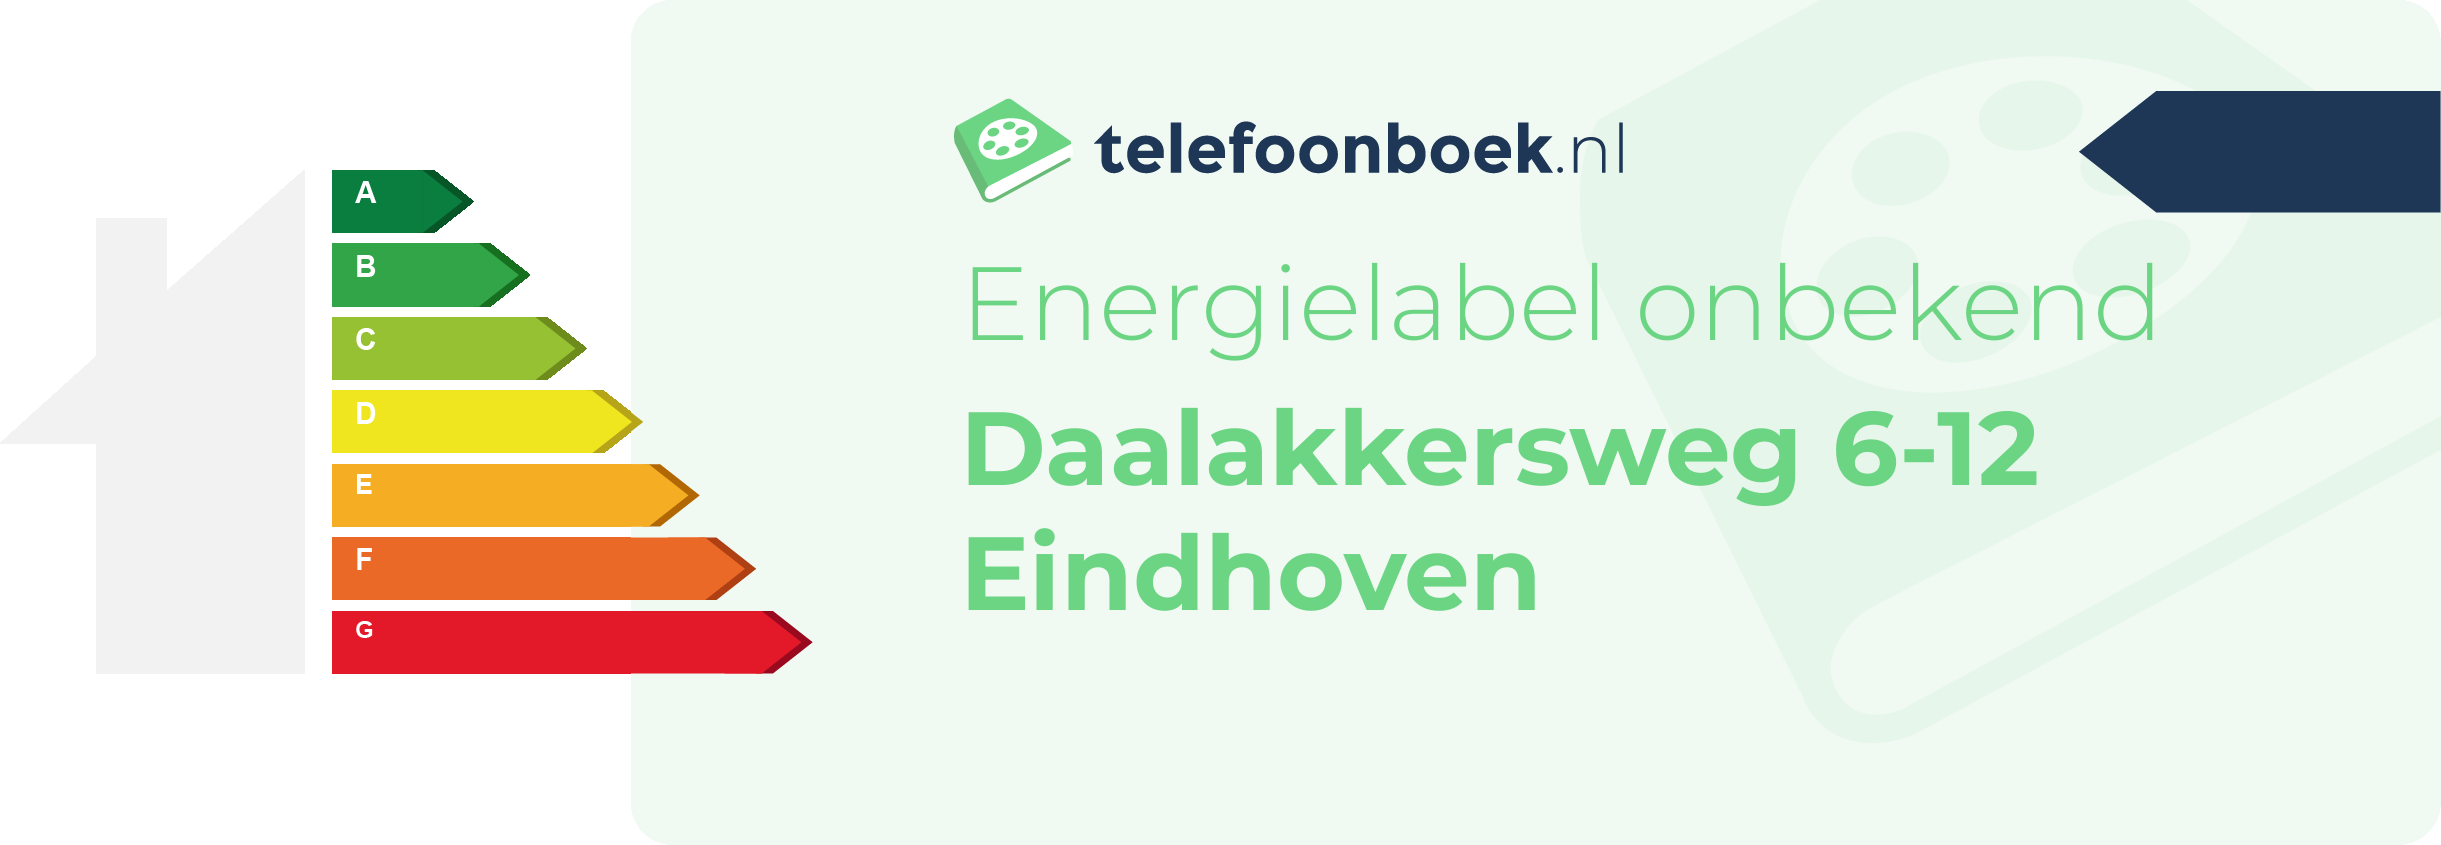 Energielabel Daalakkersweg 6-12 Eindhoven